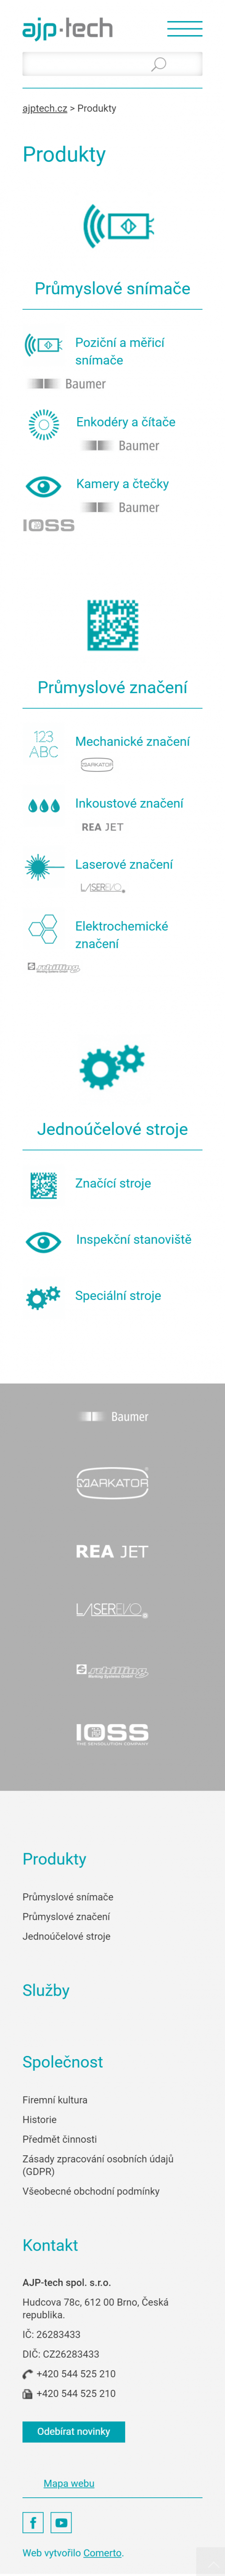 Tvorba webu ajptech.cz - Screenshot mobilní verze